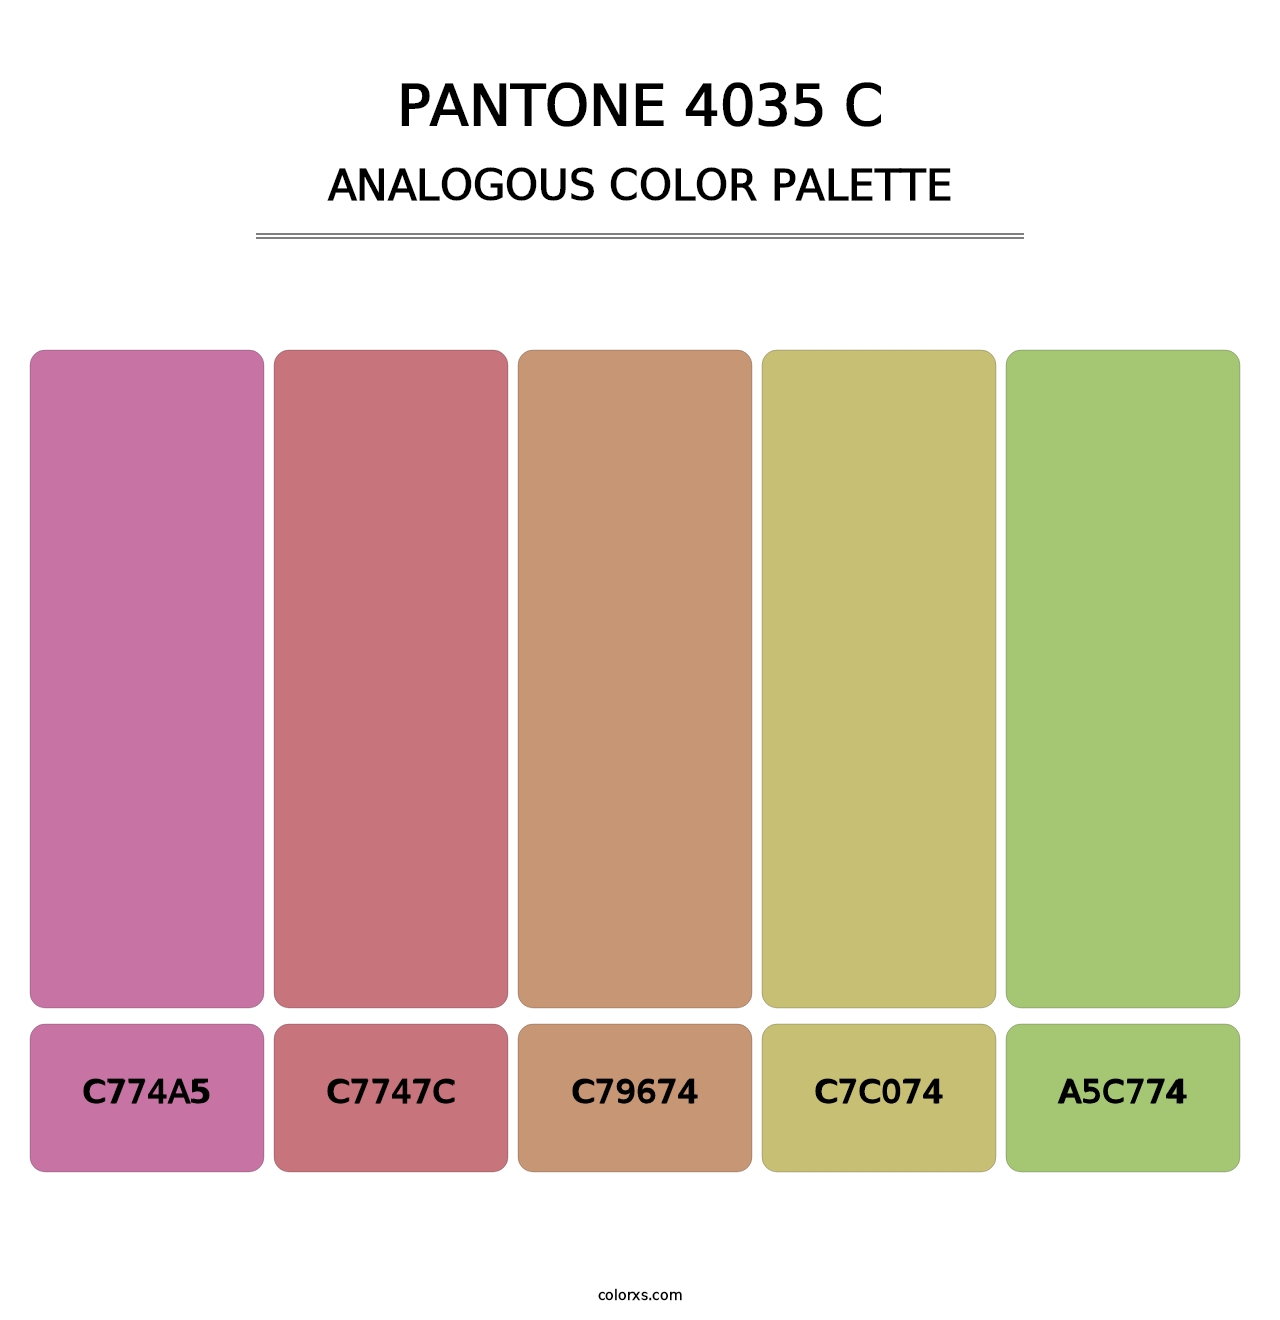 PANTONE 4035 C - Analogous Color Palette